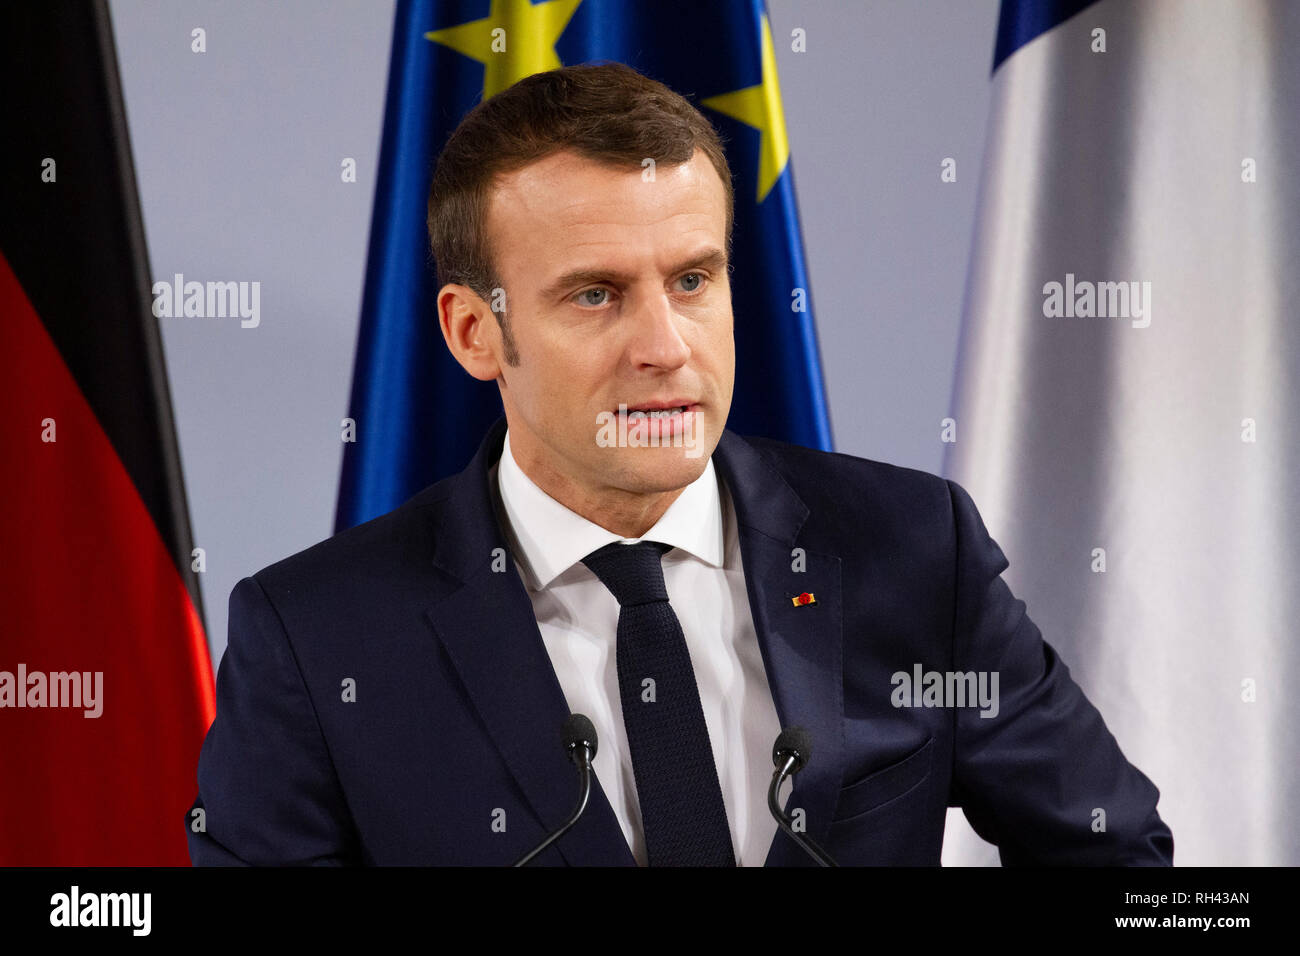 Emmanuel Macron bei der Erneuerung des deutsch-französischen Freundschaftsvertrages im Rathaus. Aachen, 22.01.2019 Stock Photo